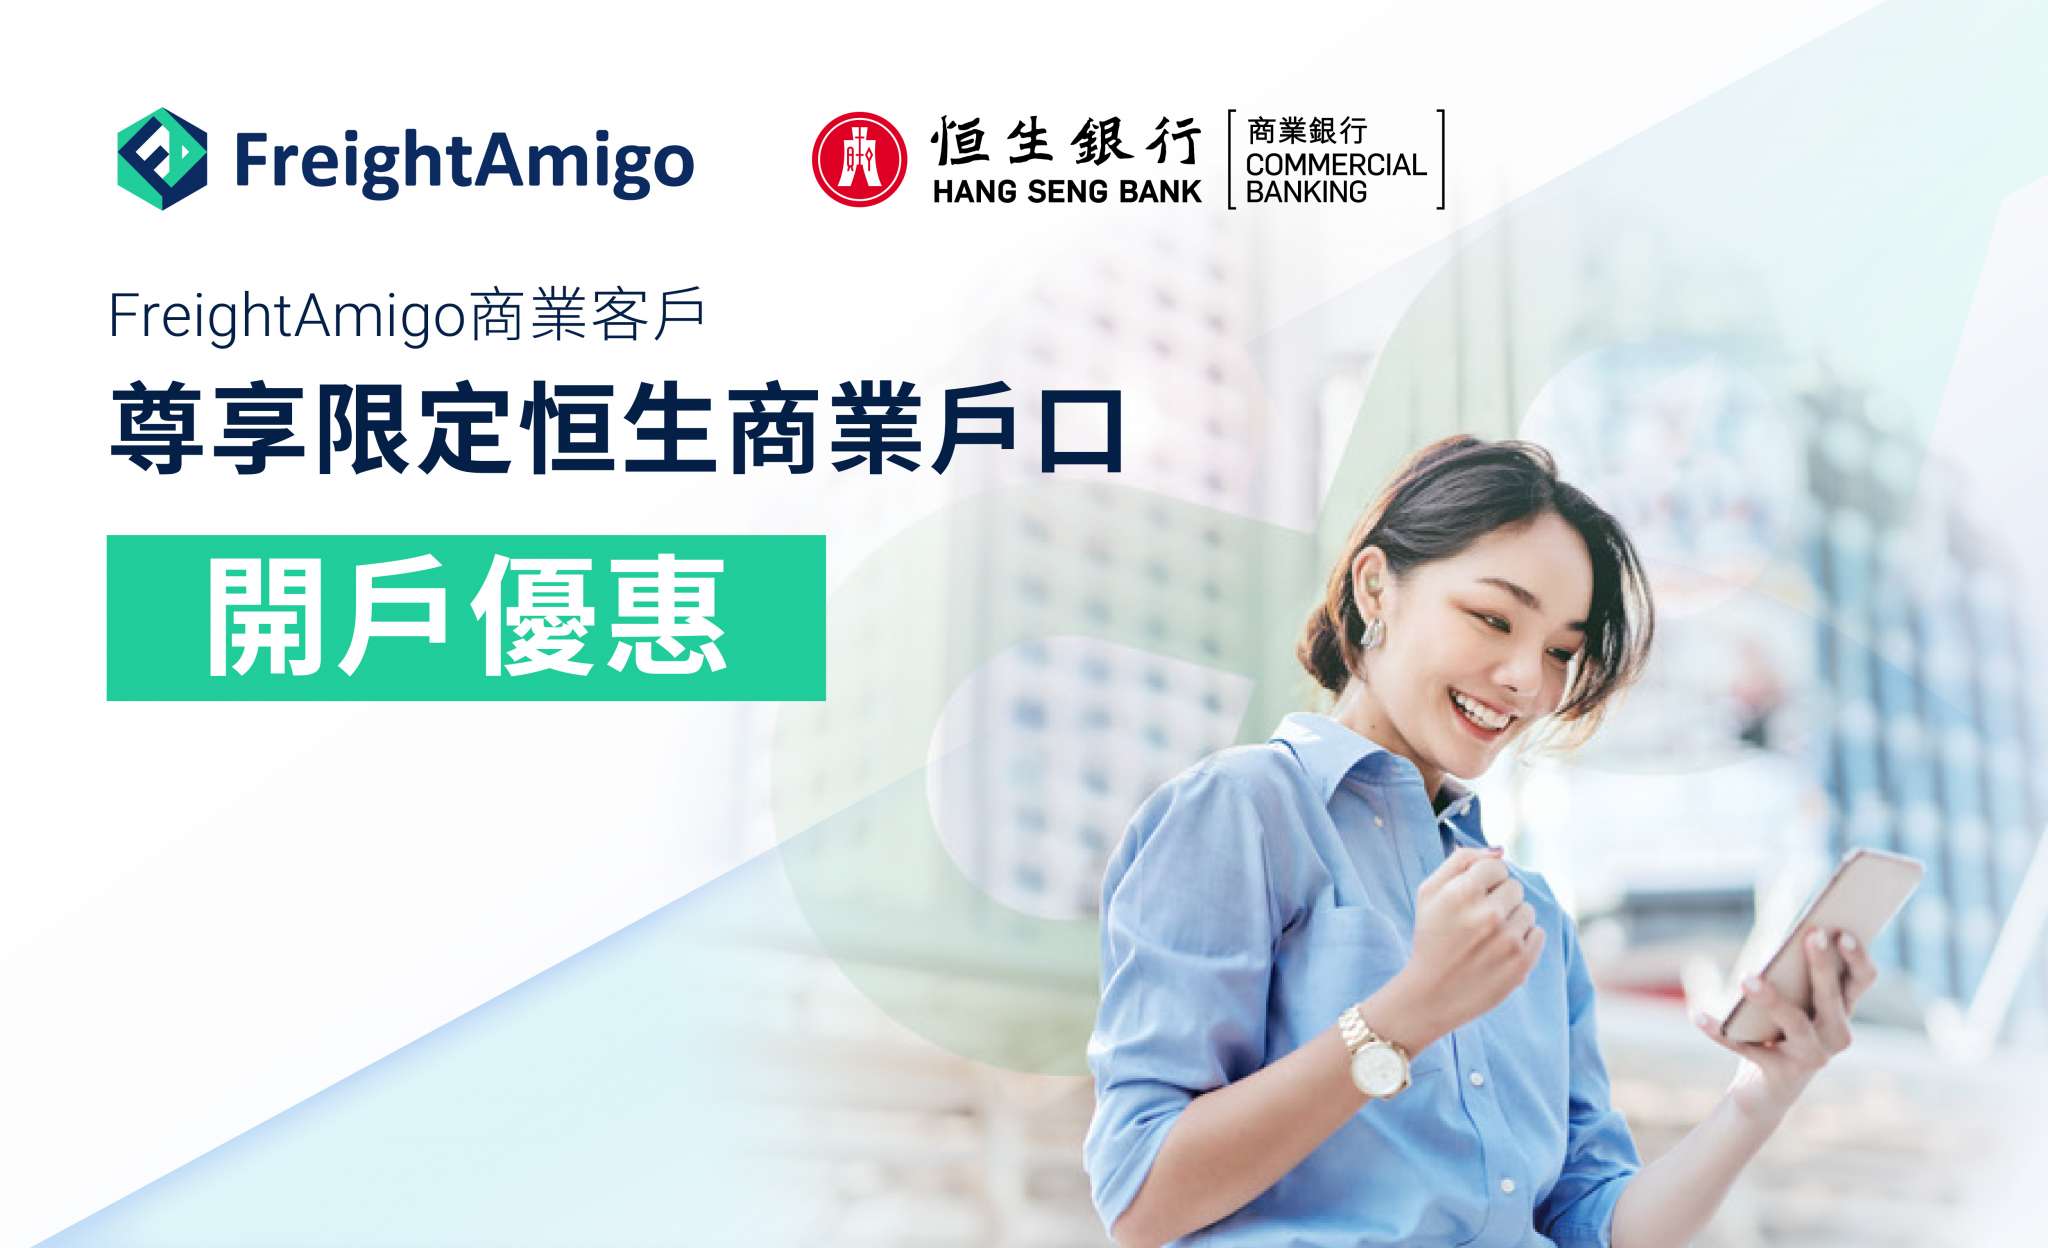 FreightAmigo商業客戶尊享高達HK$3,600恒生開戶優惠